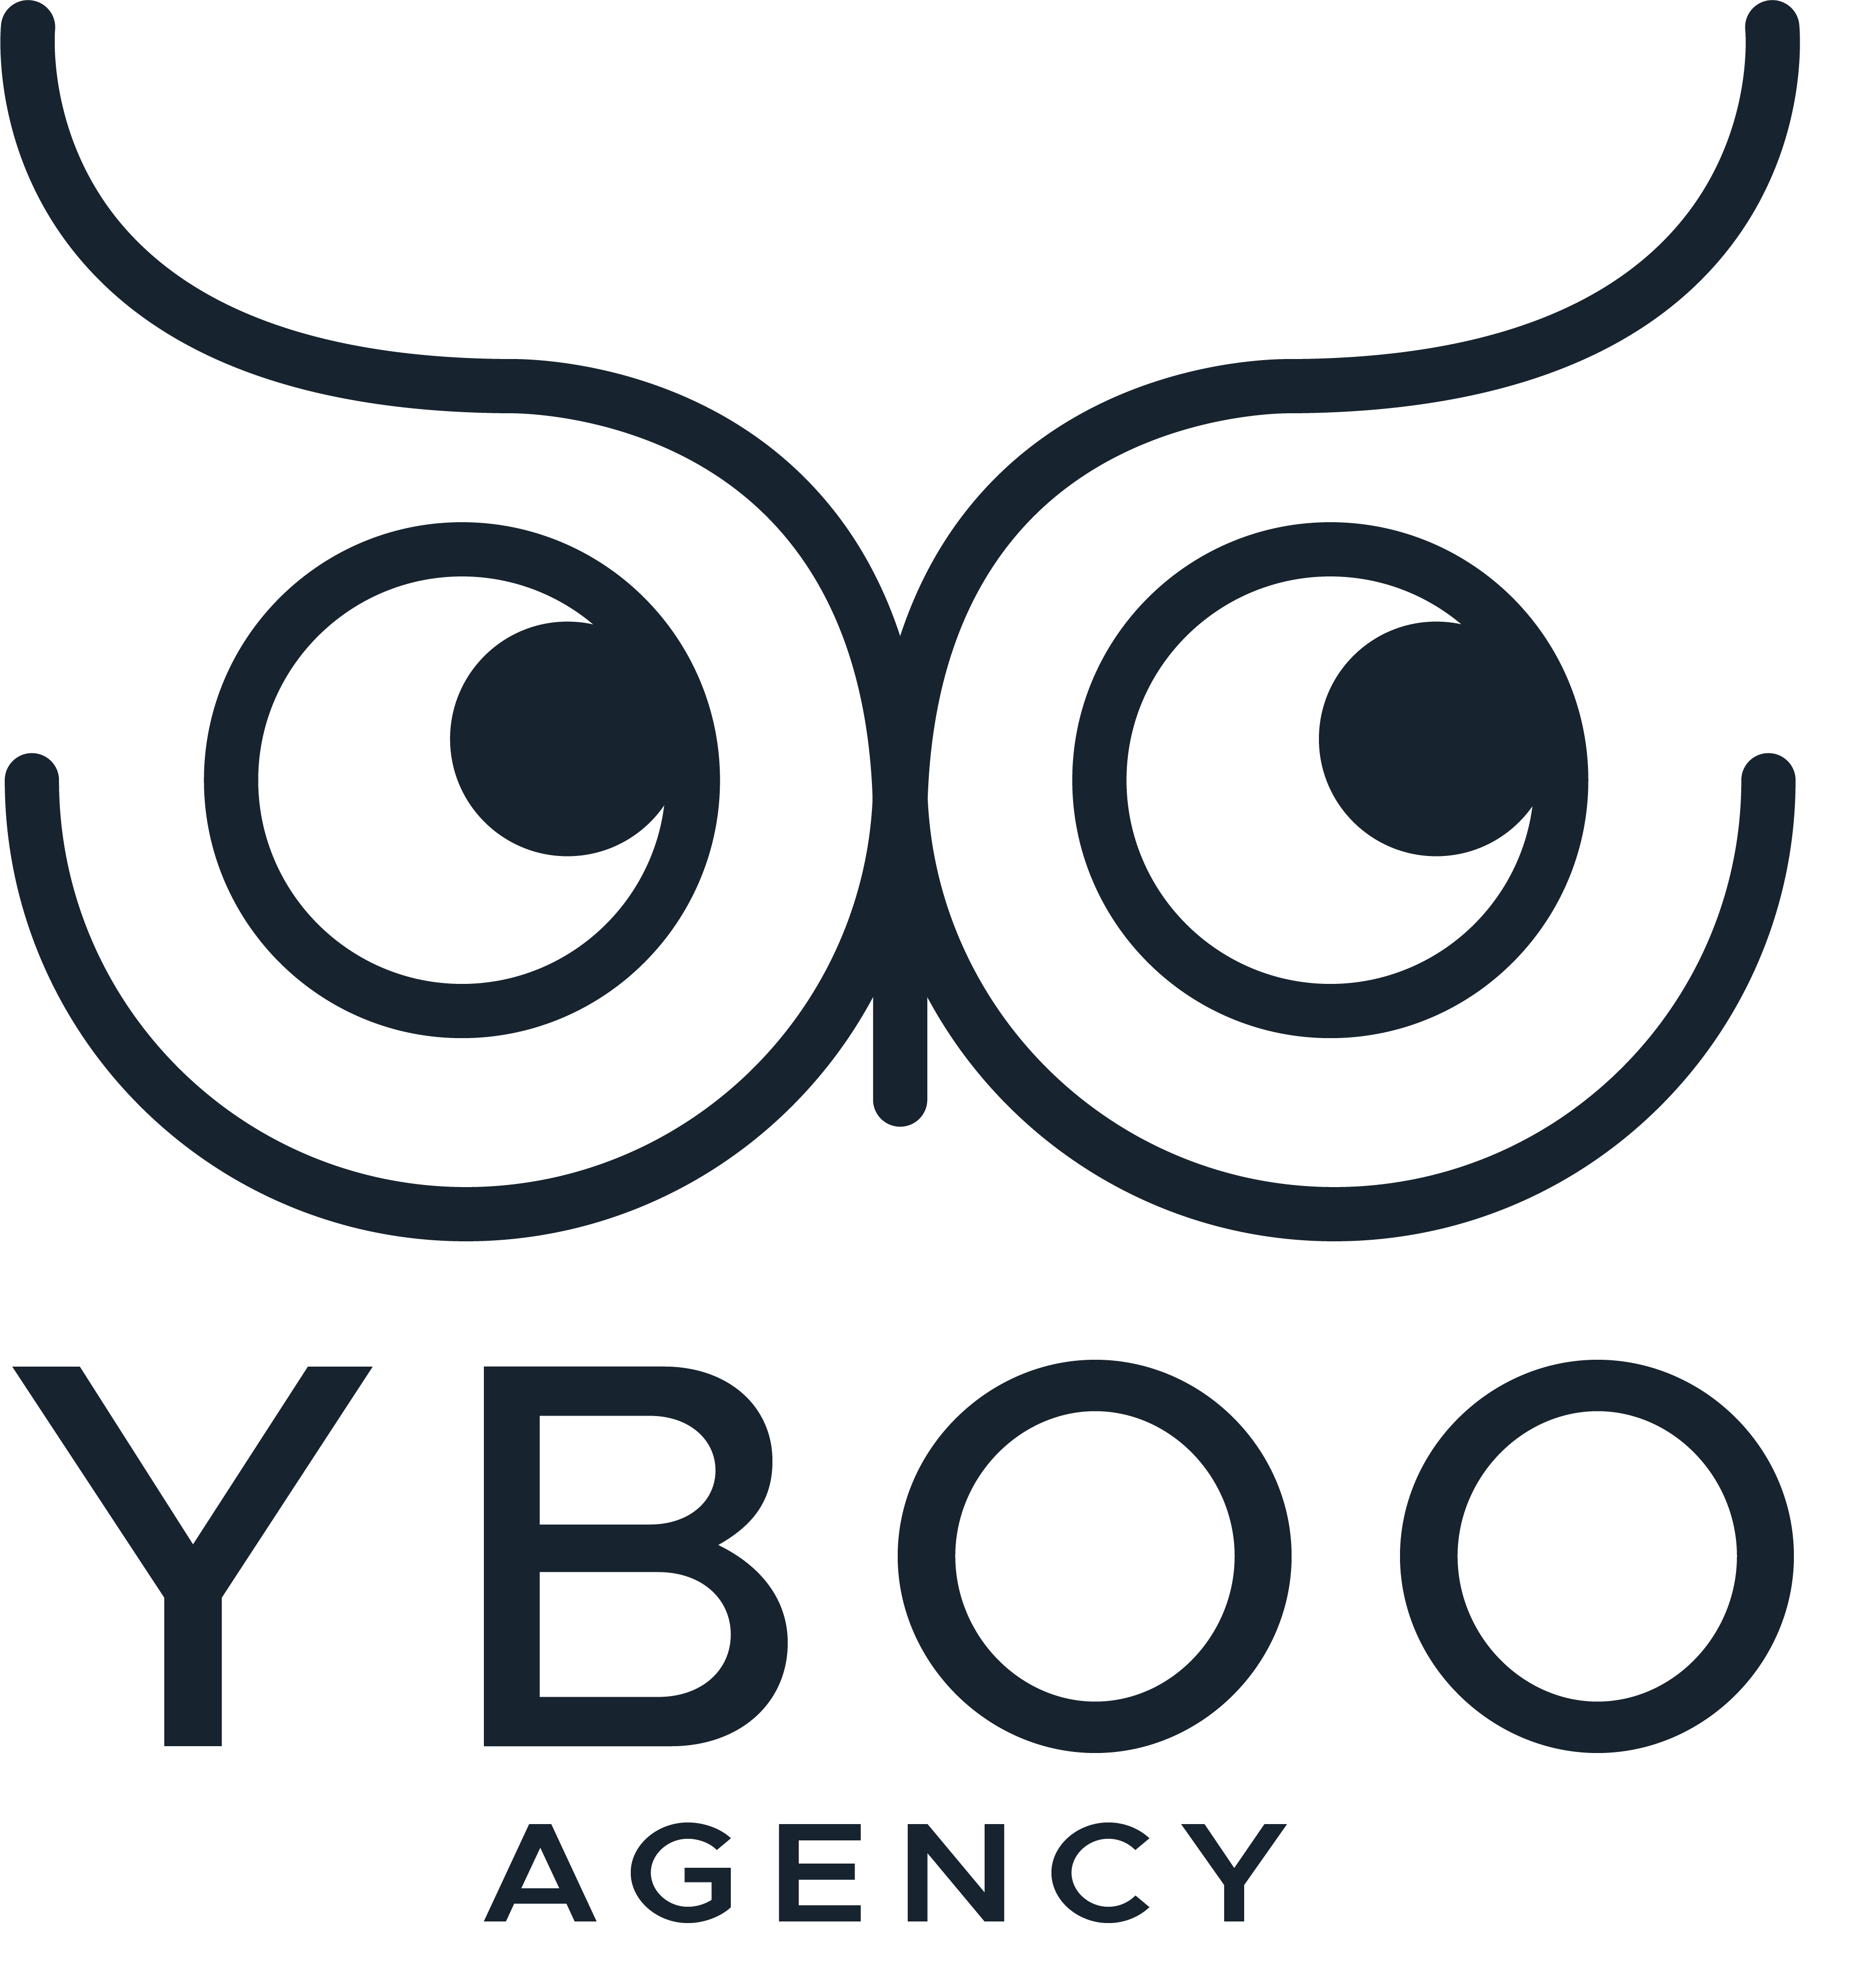 Yboo Agency logo